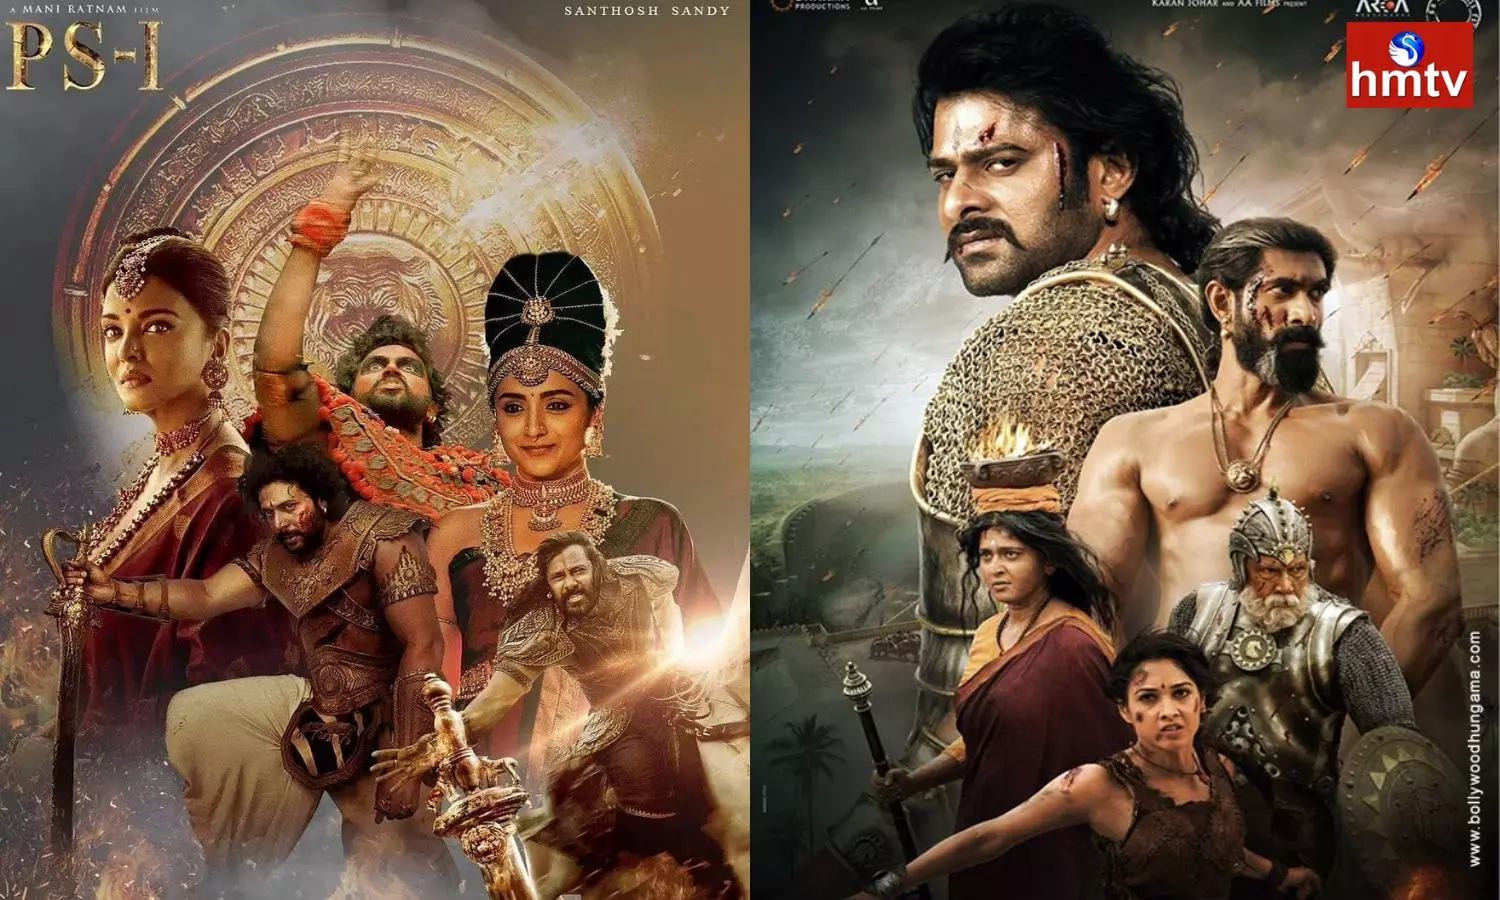 Ponniyin Selvan 1 War Between Telugu Audience and Tamil Audiences